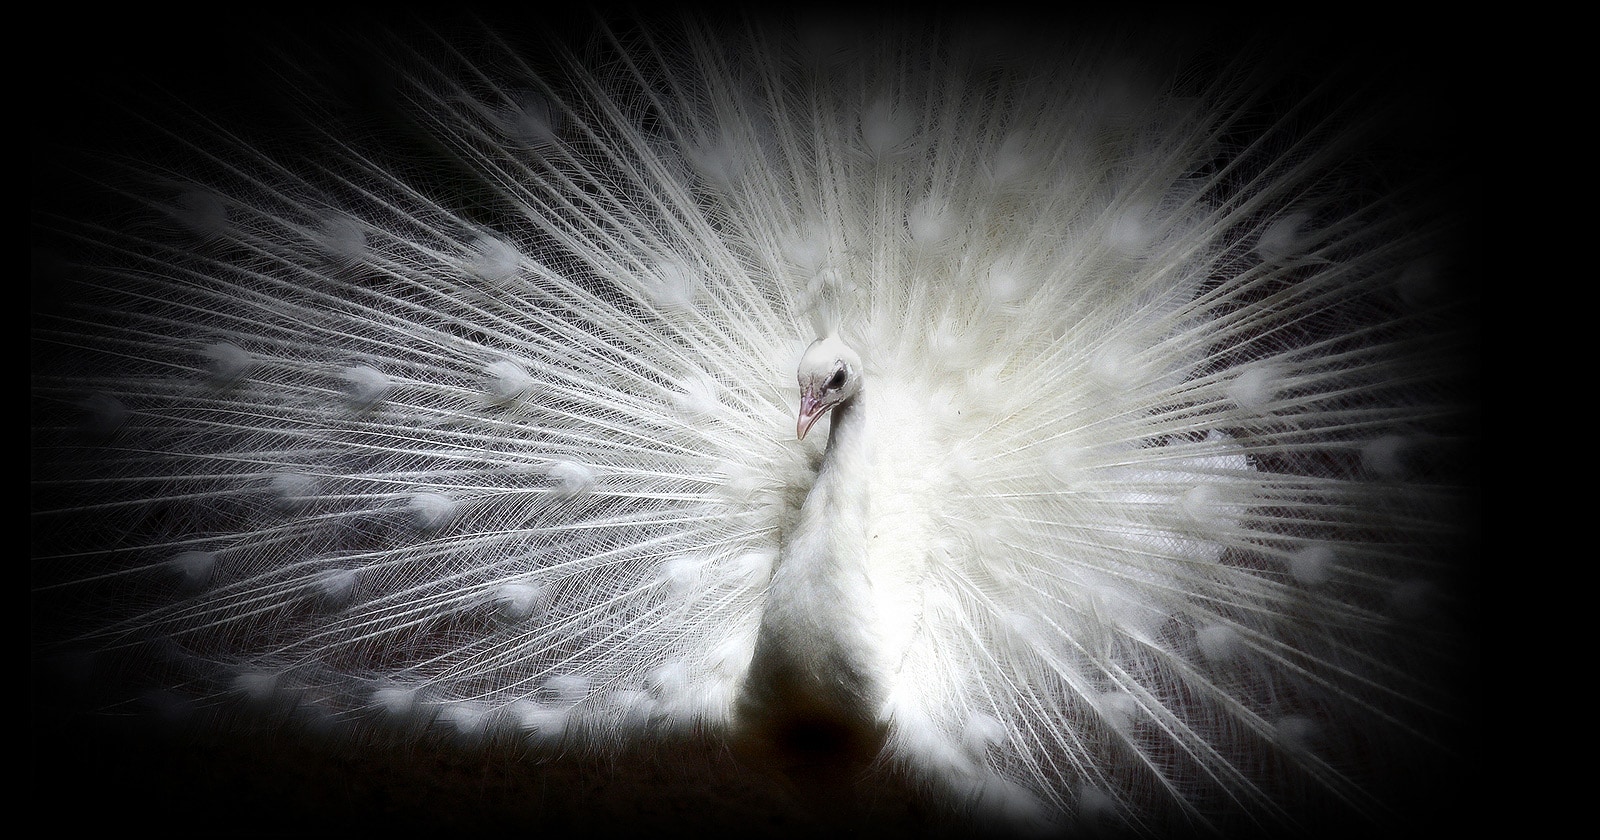 صورة لطاووس أبيض اللون على خلفية سوداء بشاشة OLED evo من إل جي مع ظهور التفاصيل المعقدة لكل ريشة بشكل واضح